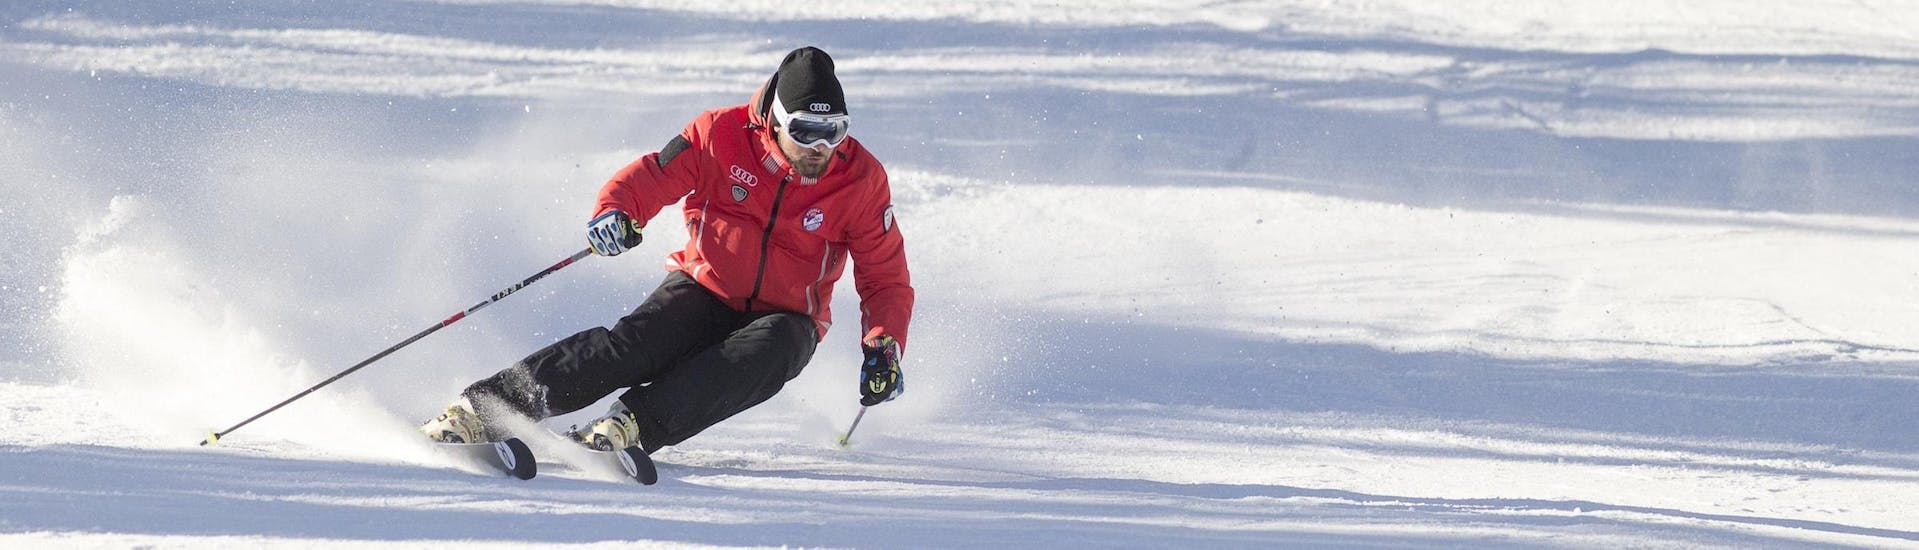 Een skileraar van Scuola Sci Cortina demonstreert de juiste skitechniek tijdens een van de Skilessen voor Volwassenen - Beginners in het skigebied van Cortina d'Ampezzo.